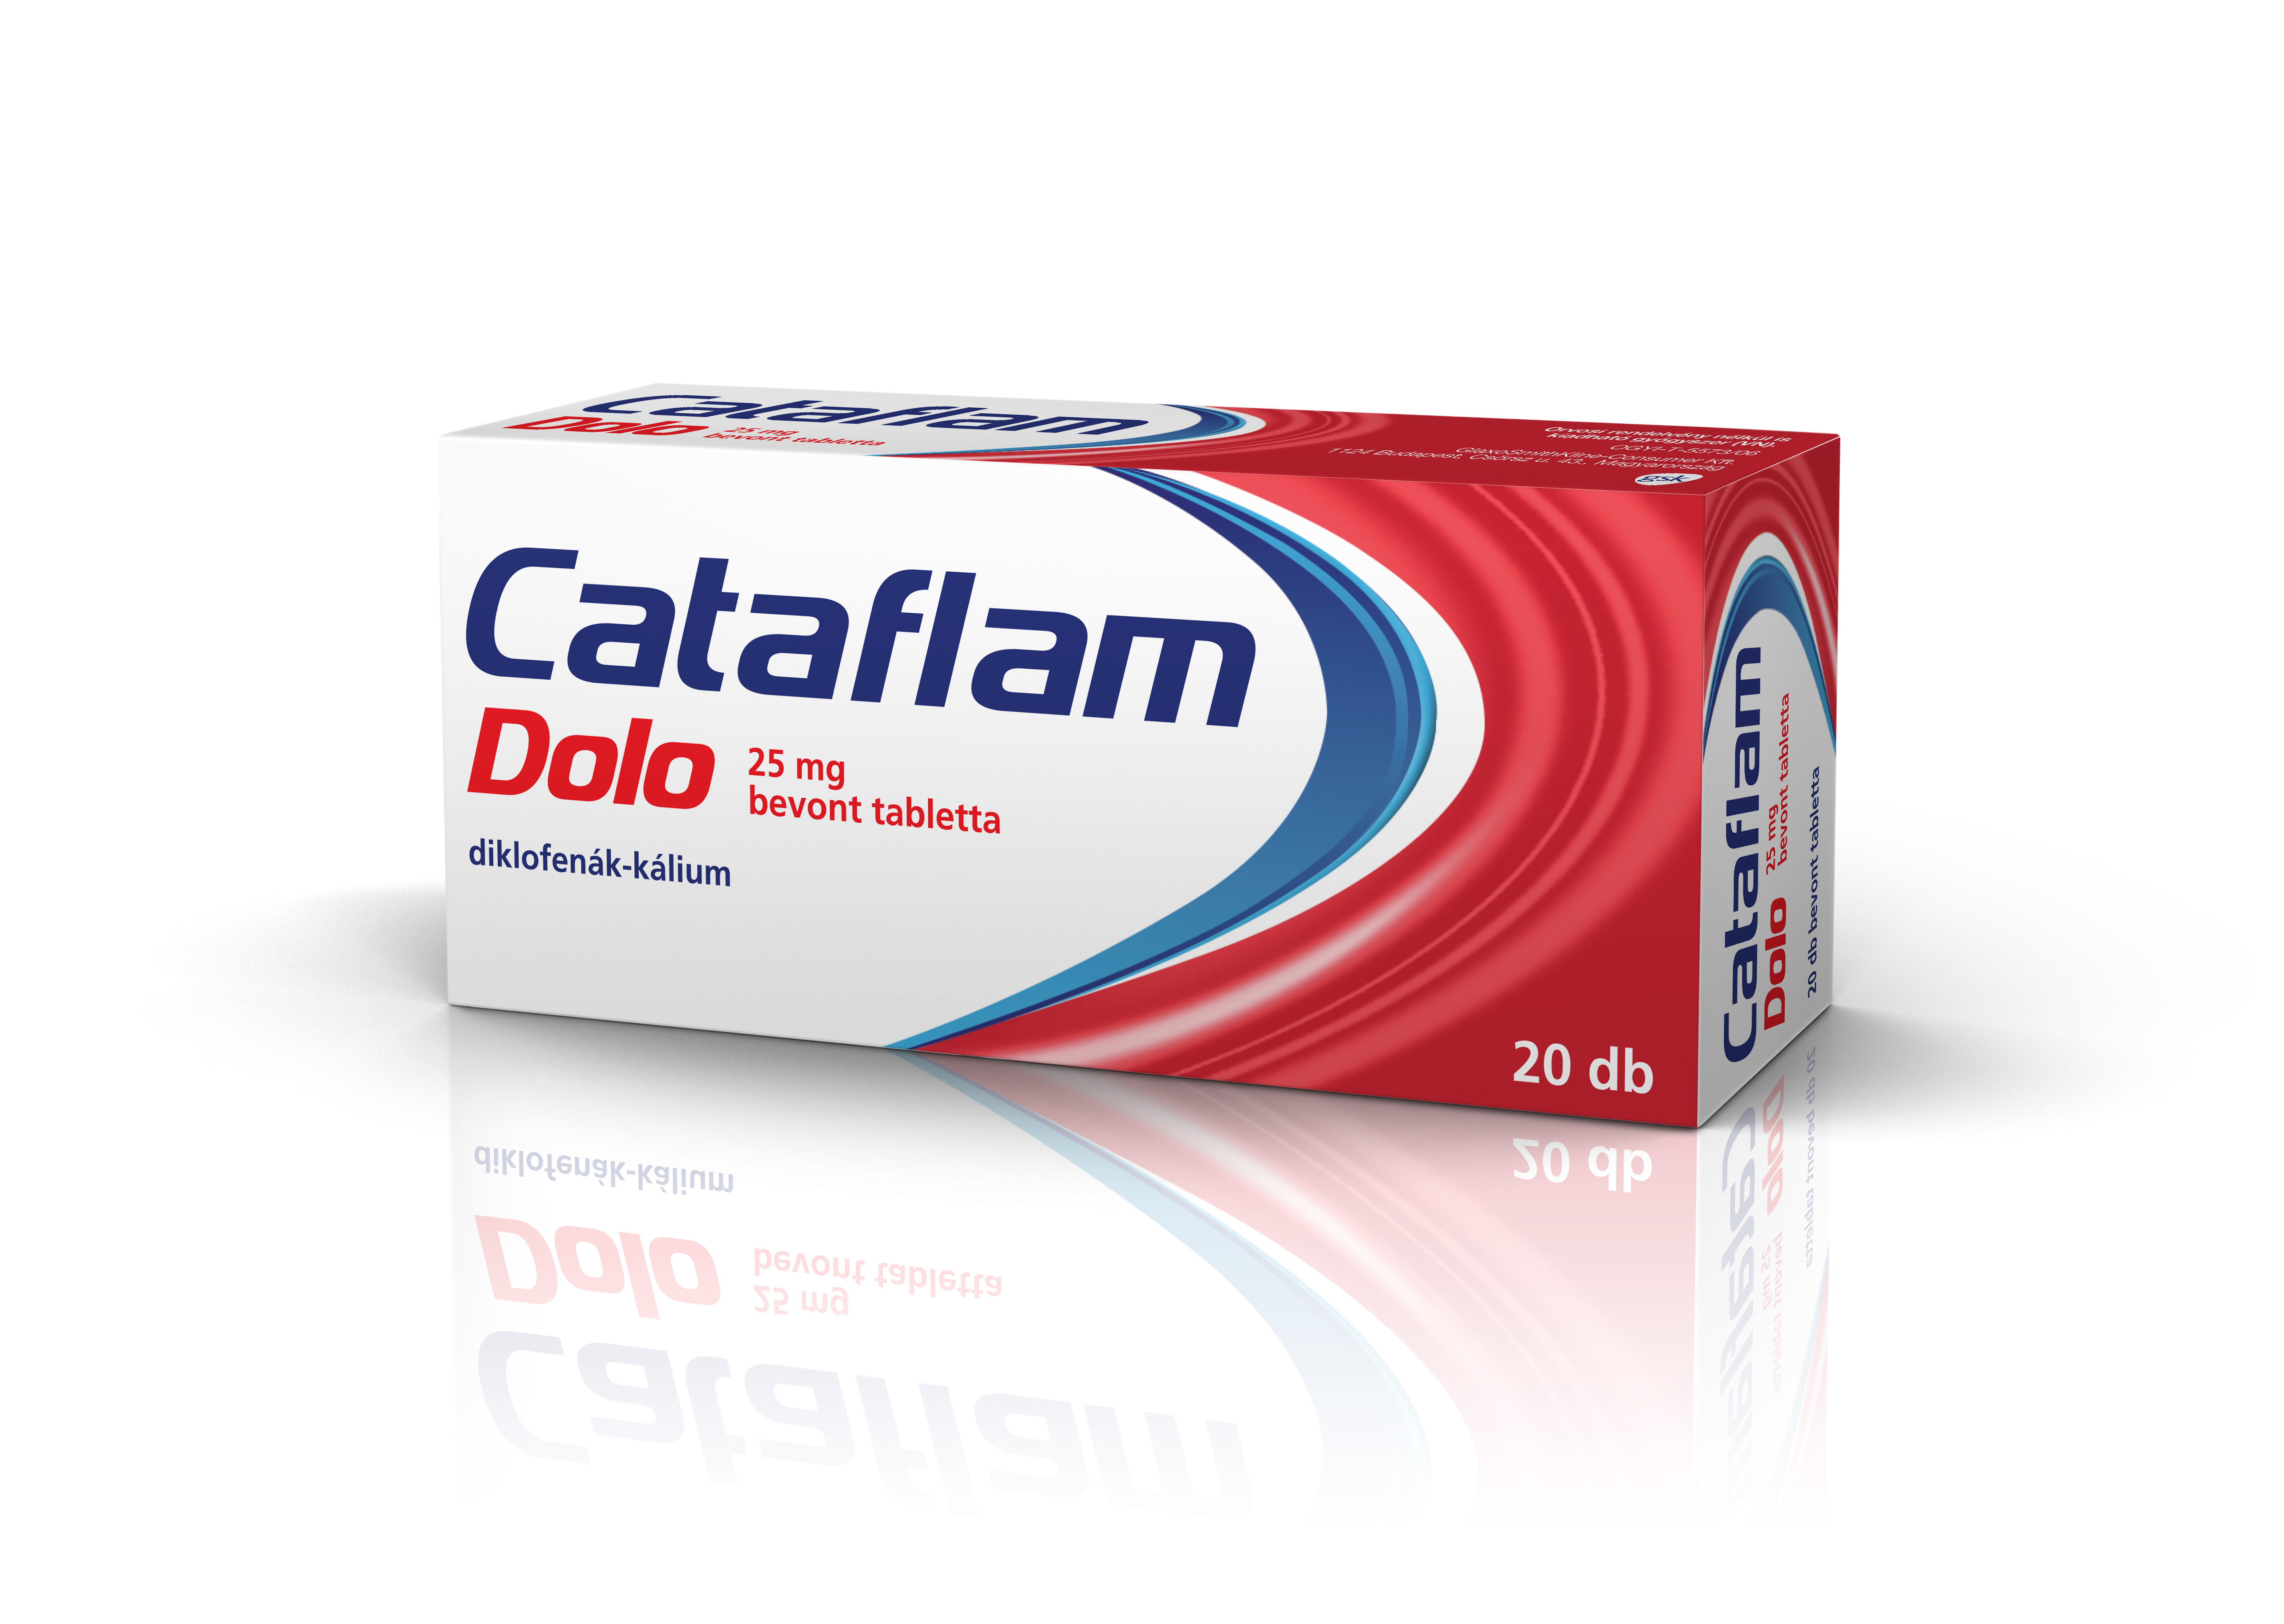 DICLOFENAC-RATIOPHARM 50 mg filmtabletta betegtájékoztató